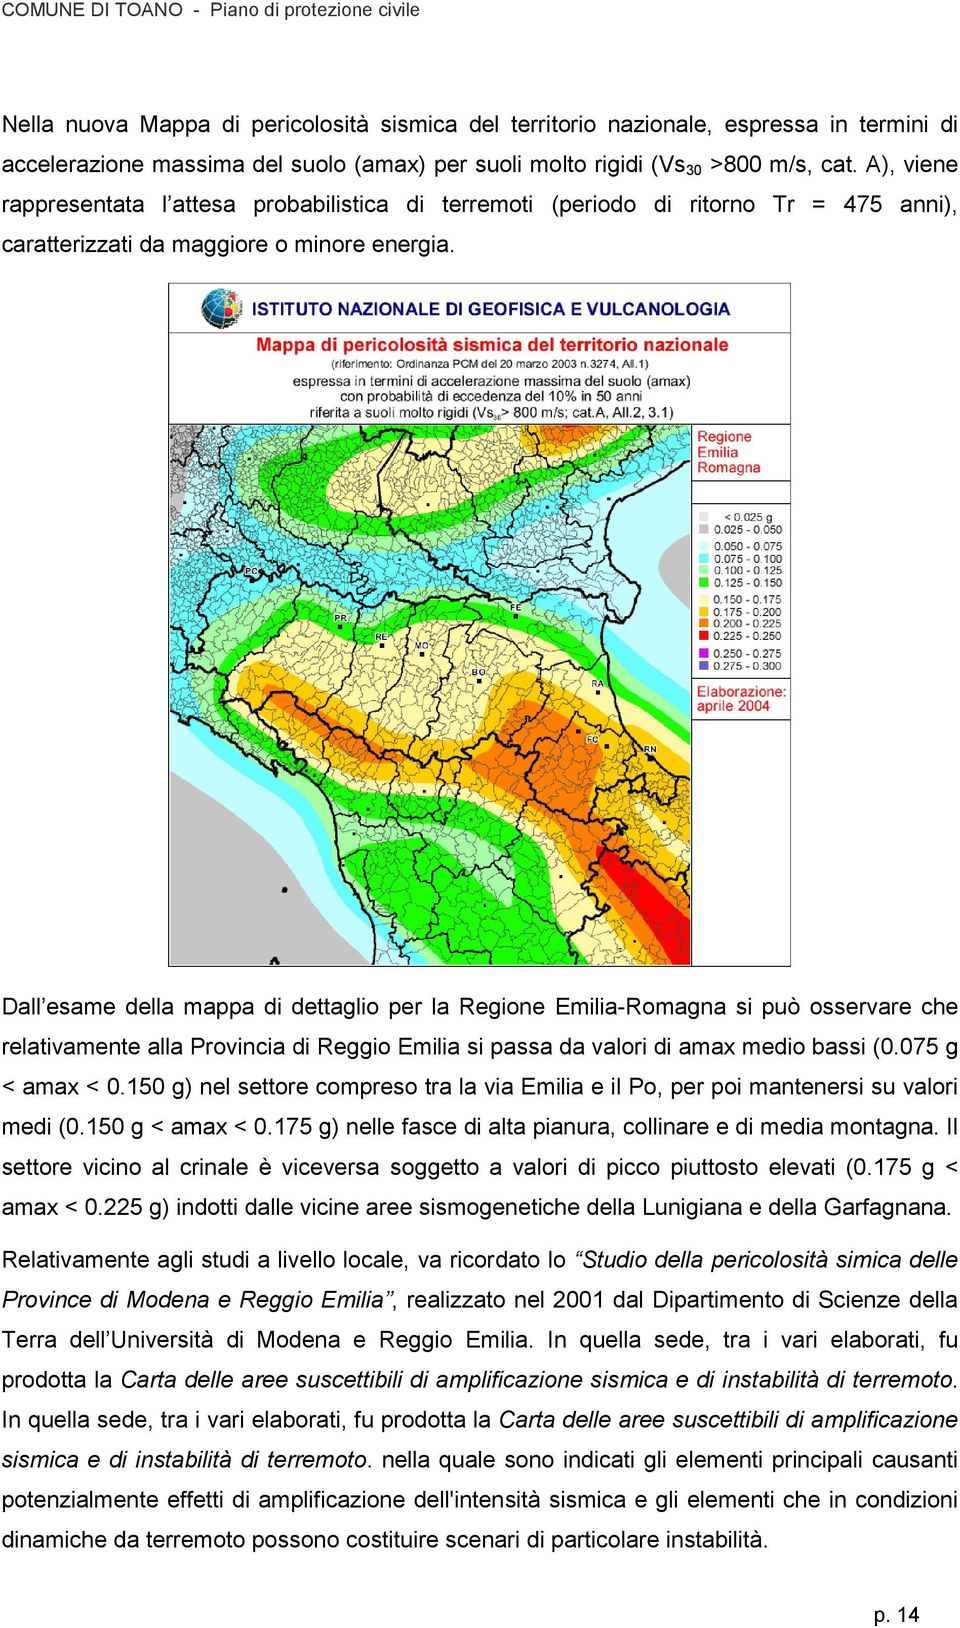 Dall esame della mappa di dettaglio per la Regione Emilia-Romagna si può osservare che relativamente alla Provincia di Reggio Emilia si passa da valori di amax medio bassi (0.075 g < amax < 0.